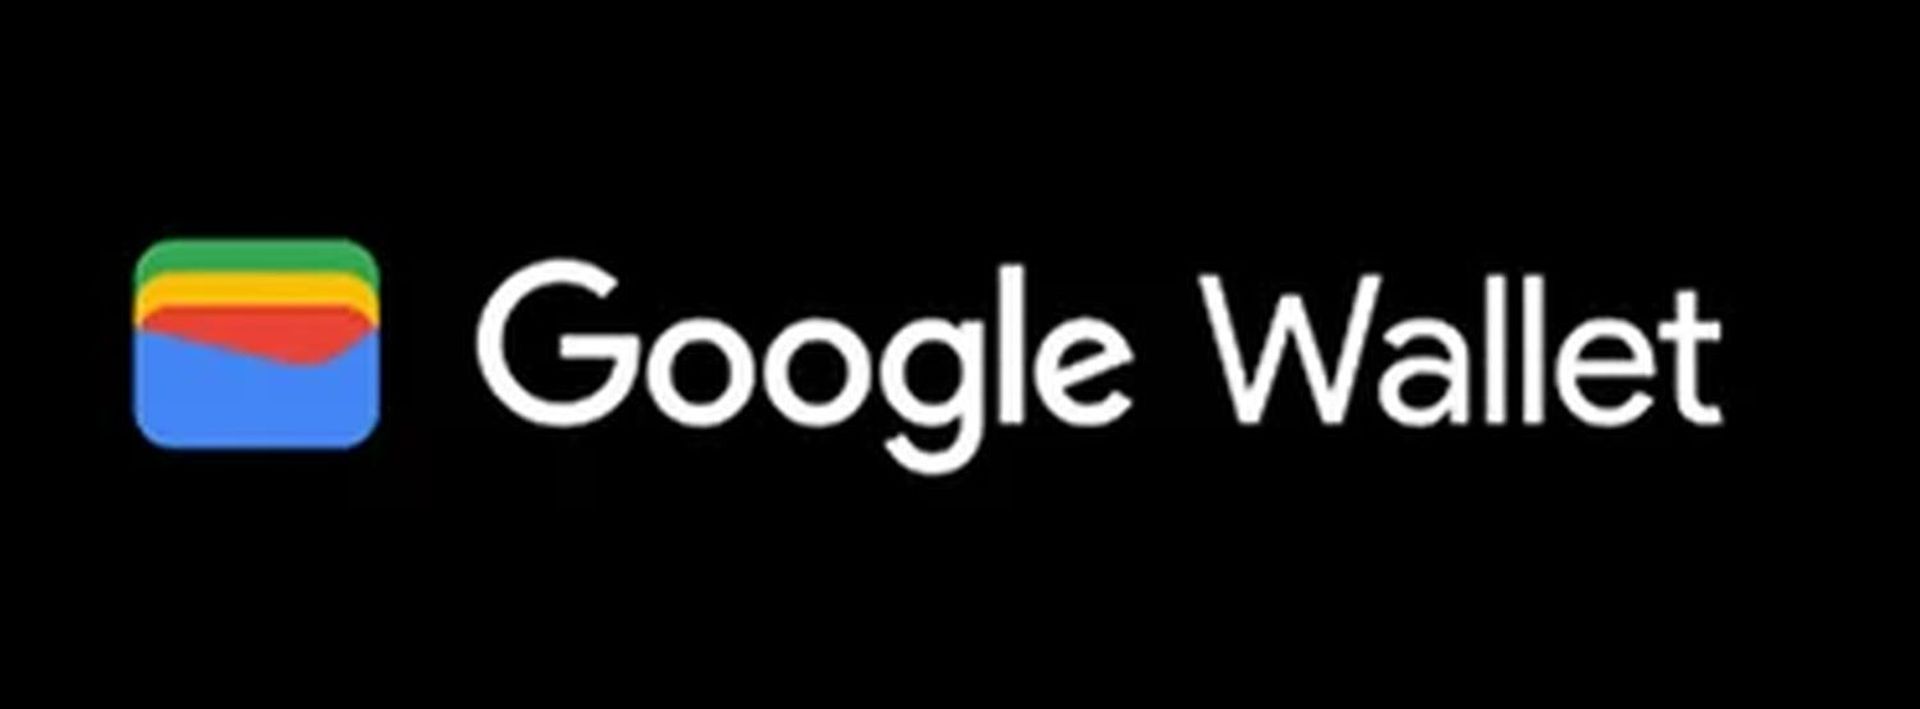 ¡Descubra por qué Google Wallet no funciona con nuestra guía completa! Además, existen alternativas a Google Wallet que vale la pena probar. ¡Explora ahora!